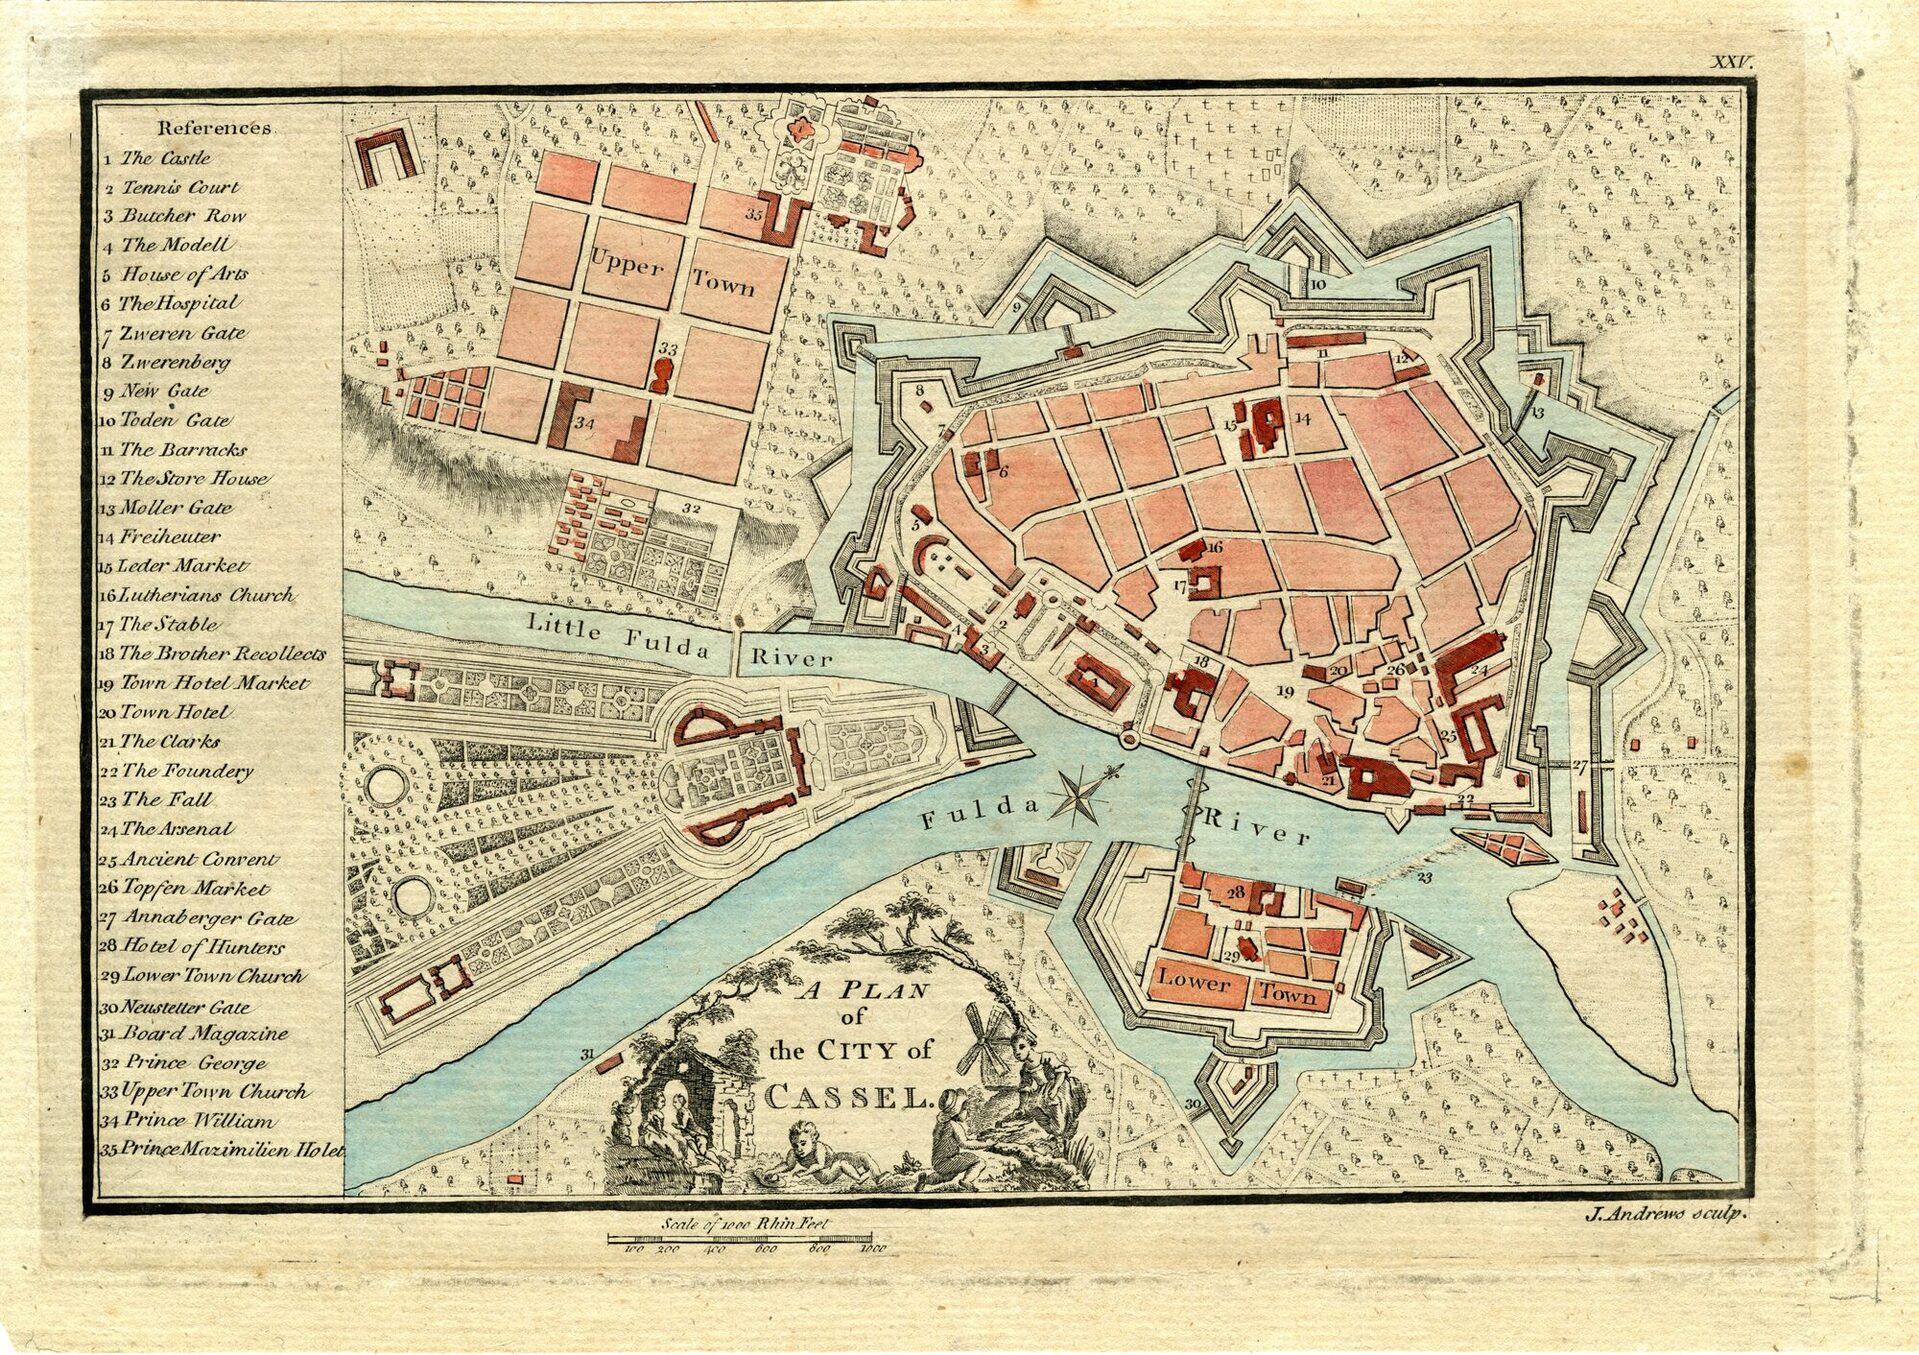 Alte Karte, die die Stadterweiterung der Oberneustadt unter Landgraf Karl zeigt.